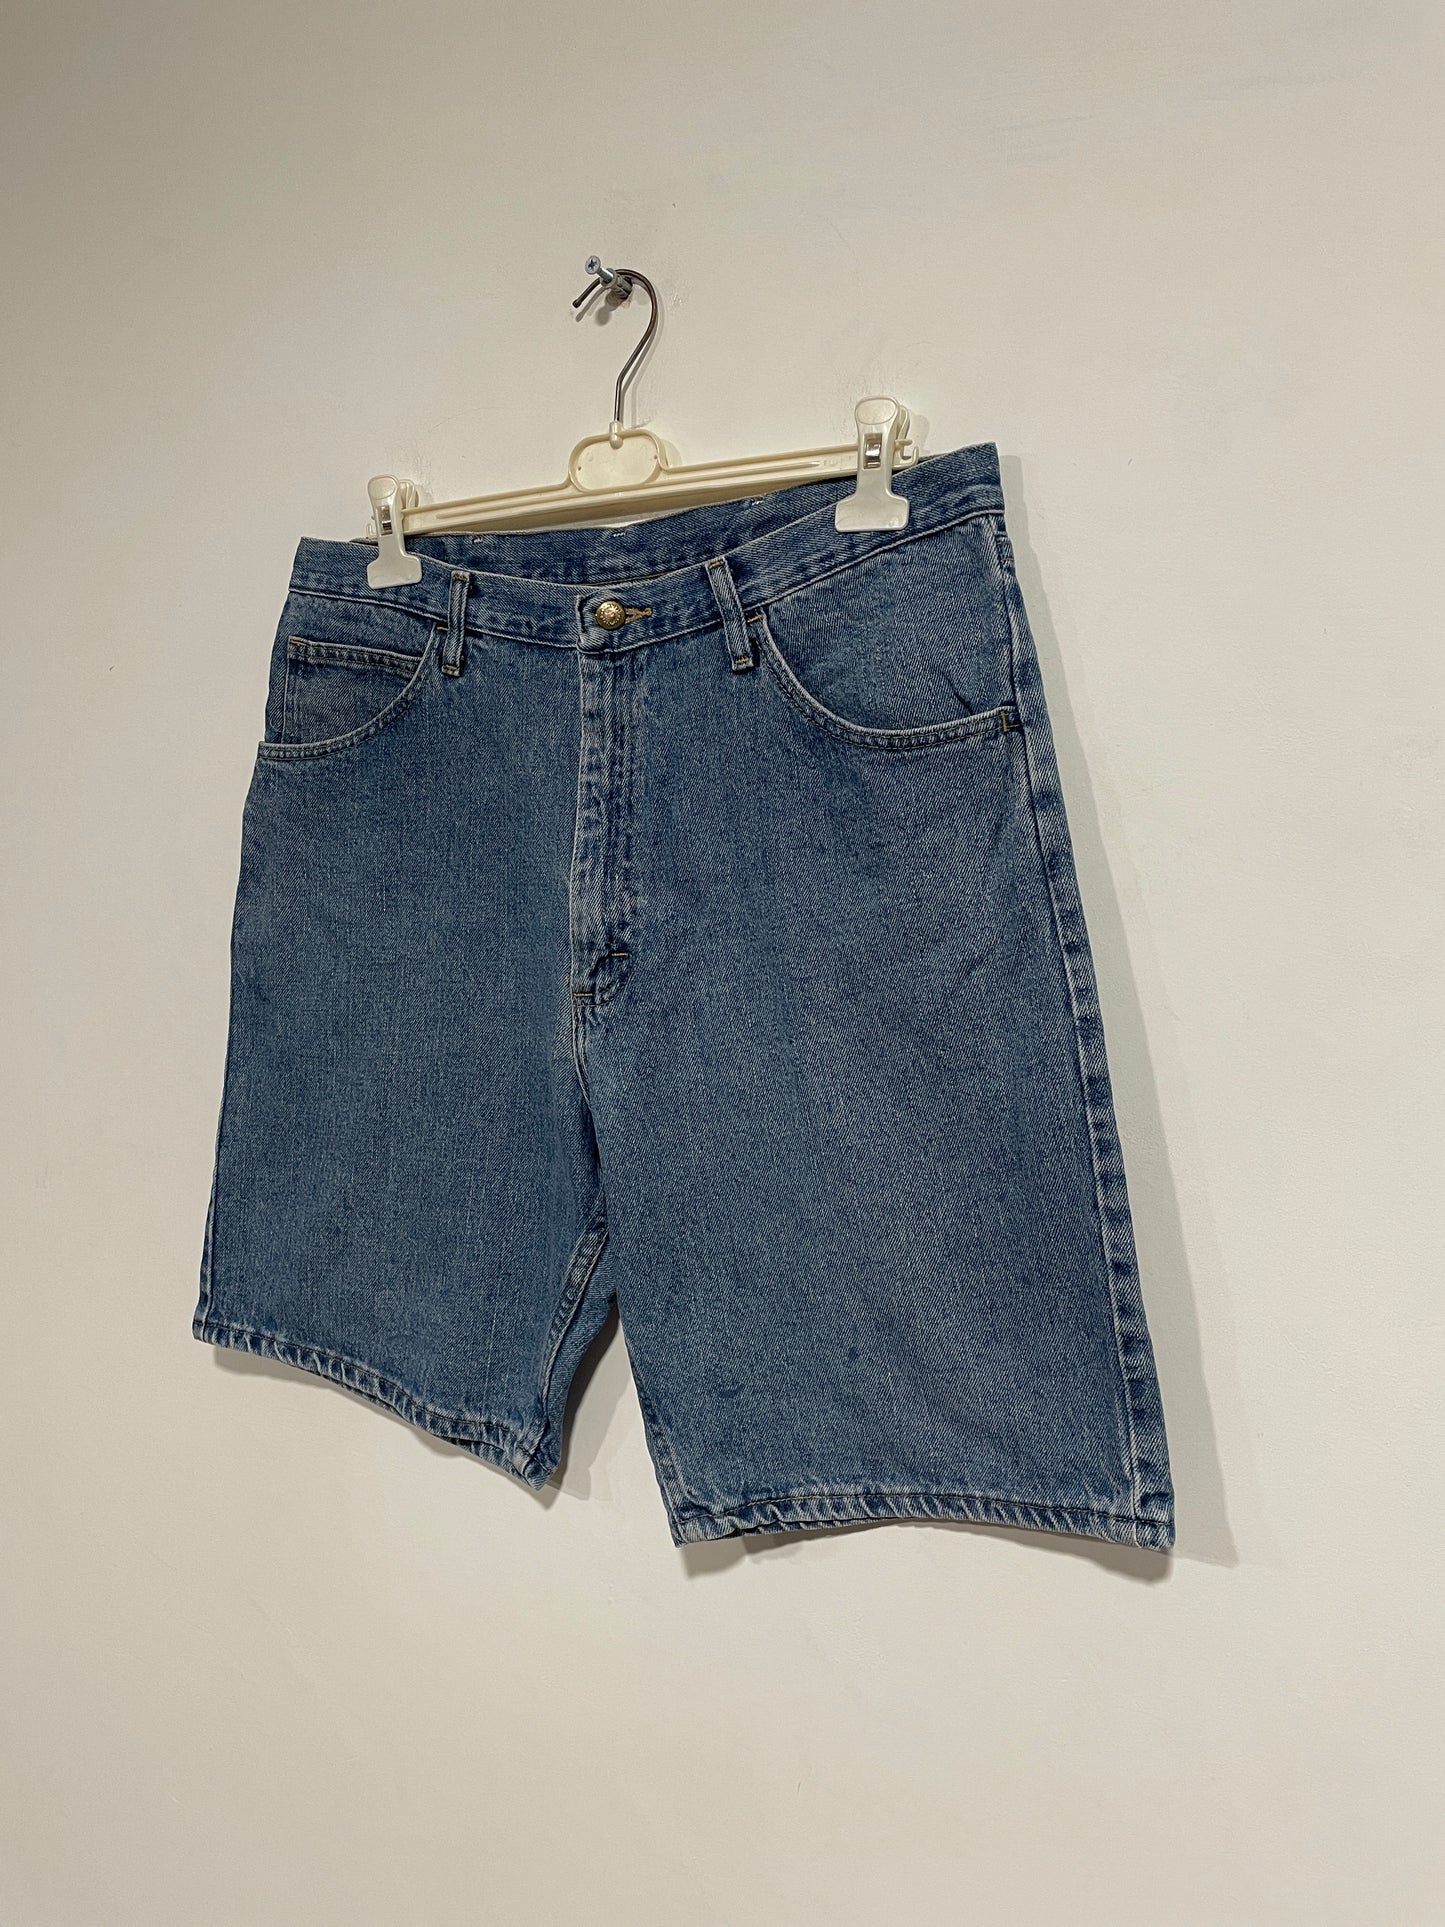 Shorts Wrangler in jeans (MR261)